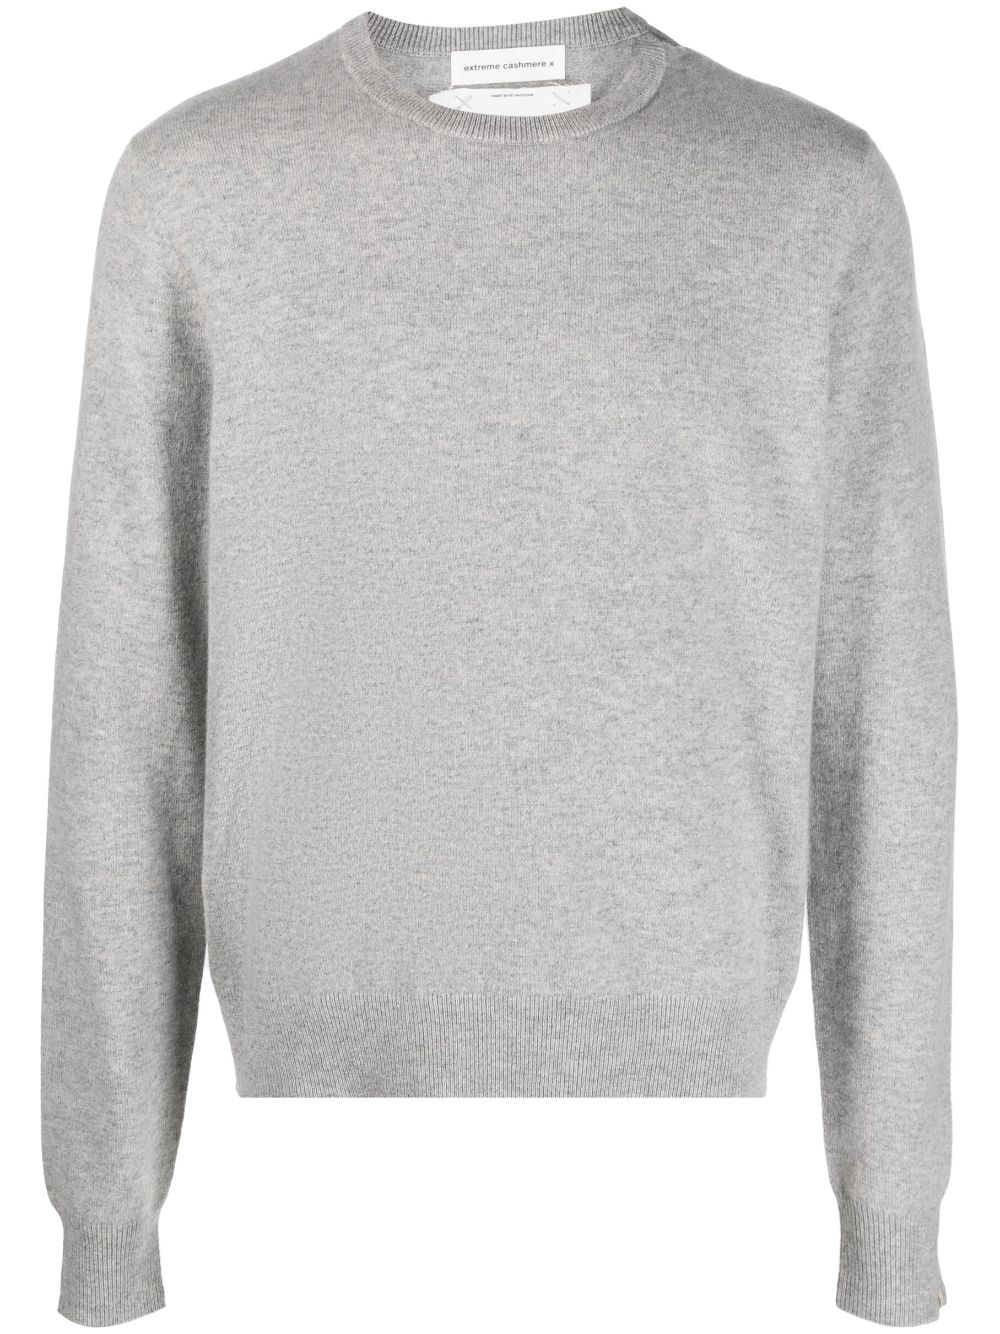 extreme cashmere Gestrickter n36 Pullover - Grau von extreme cashmere